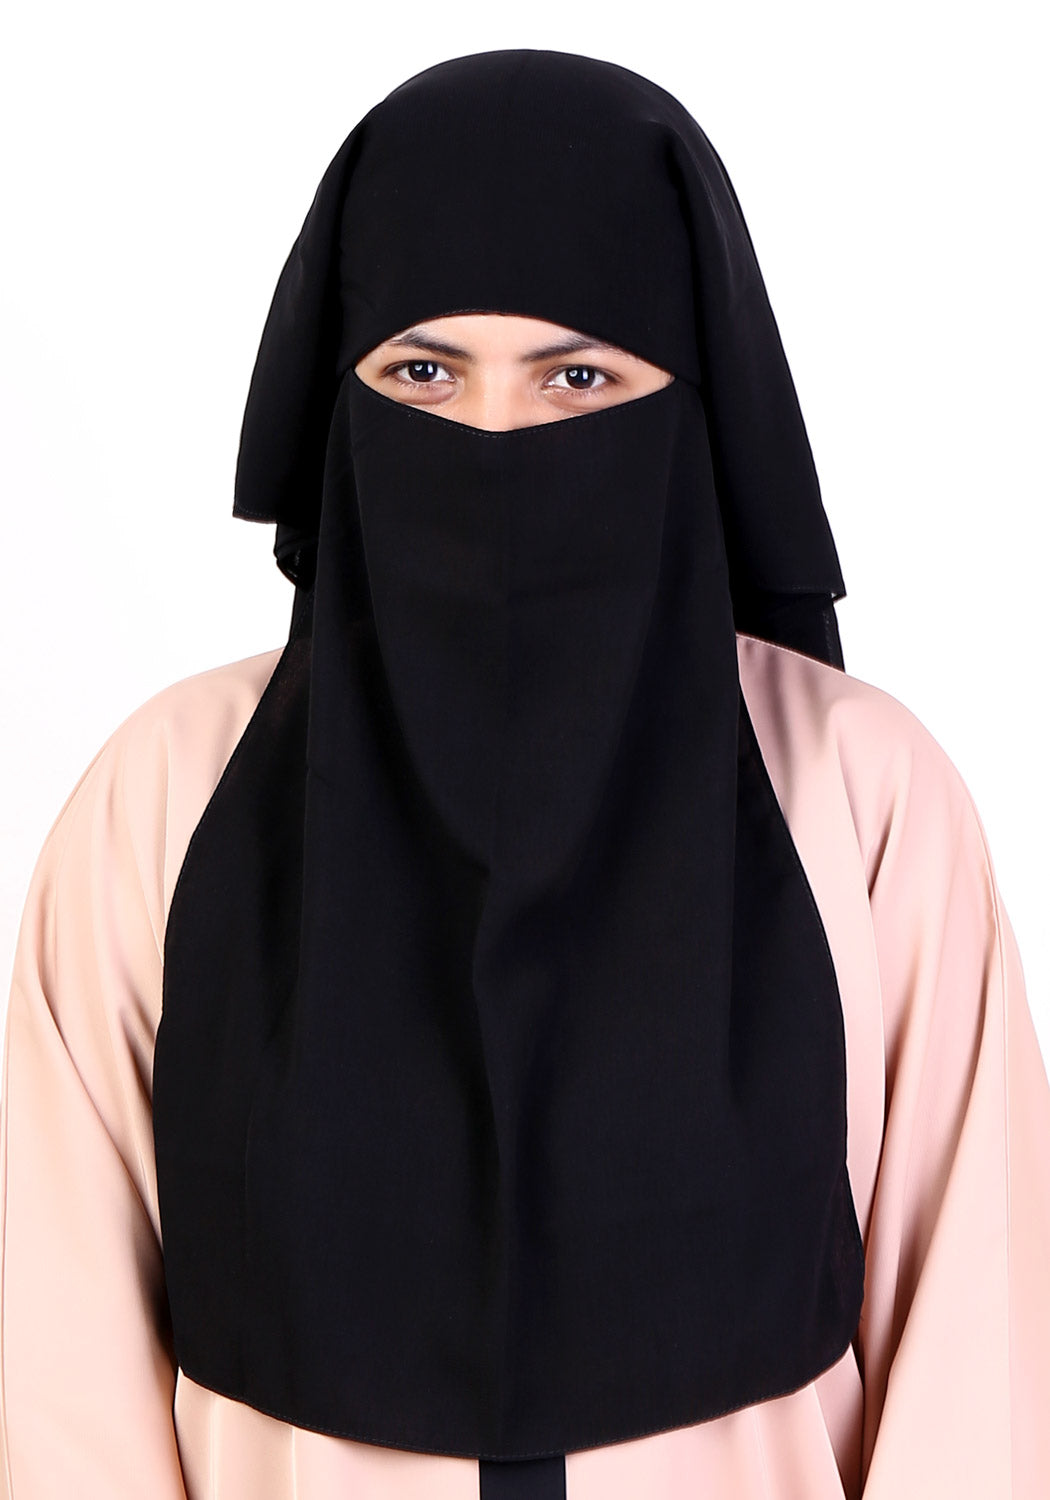 Two Layered Niqab